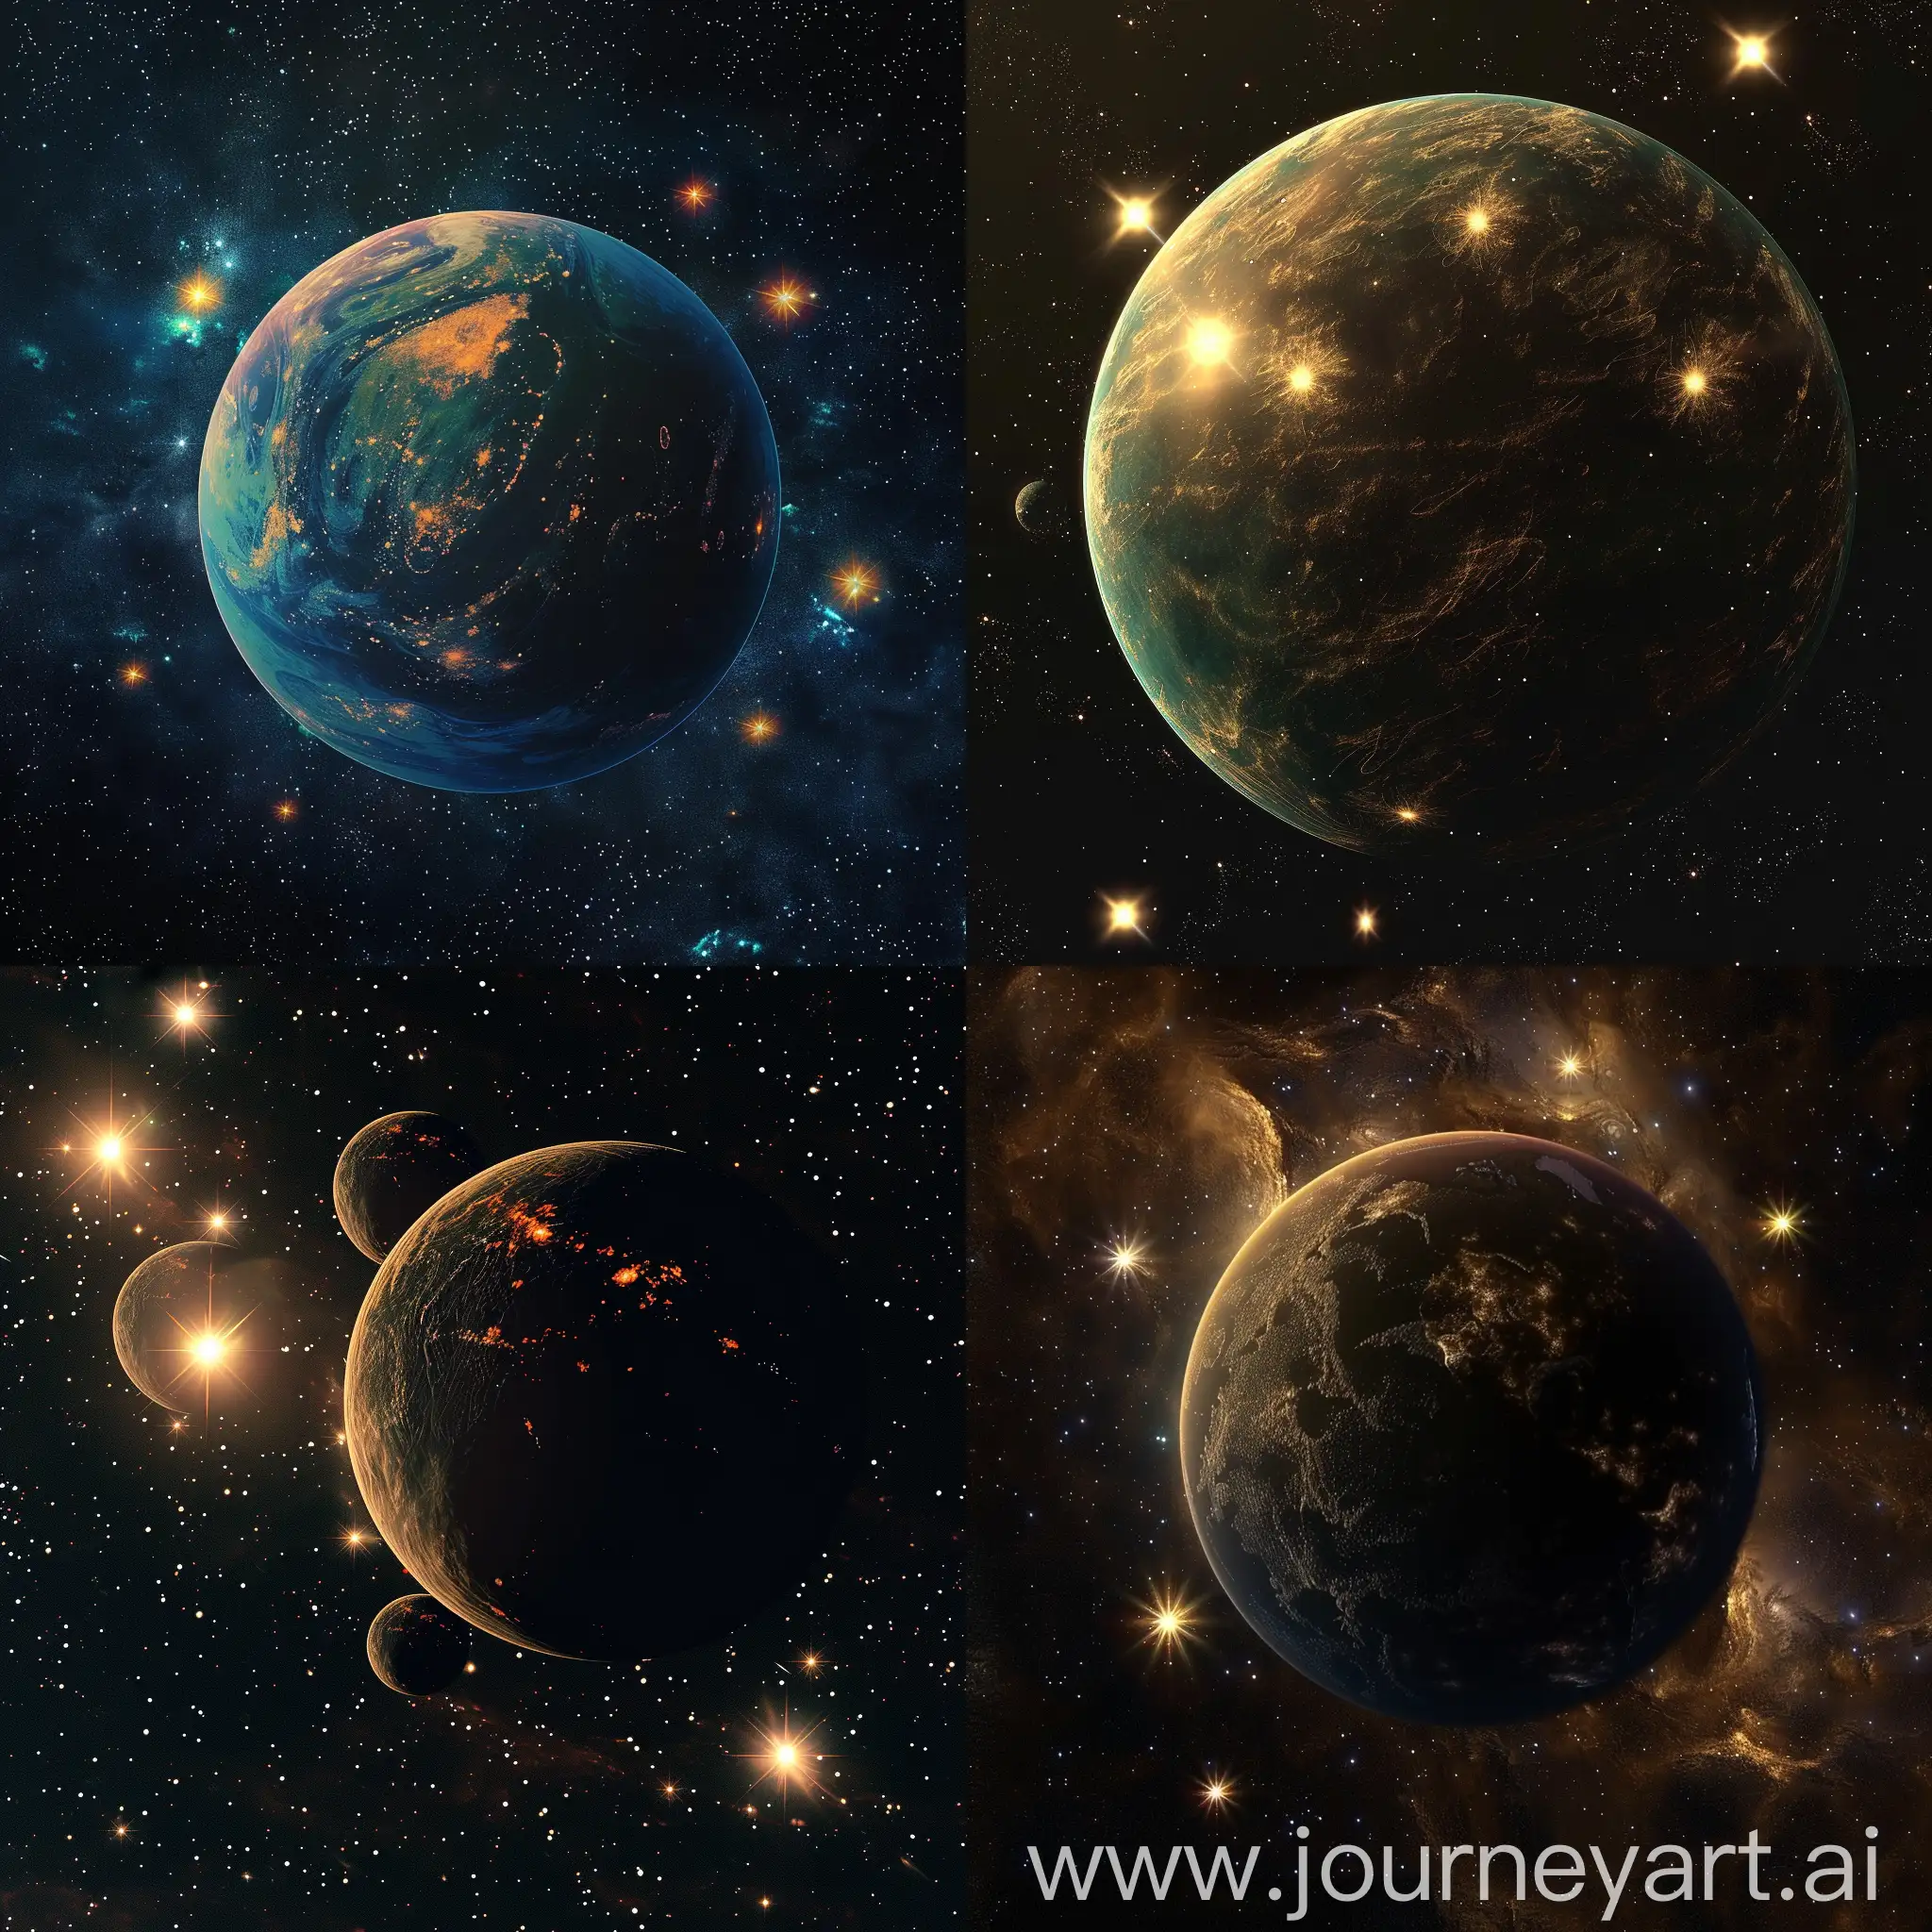 Эйденар, известная в галактике как "Планета Семи Светил", находится в созвездии Арара. Эта планета уникальна своим положением в системе, окружённой семью звёздами разного спектрального класса. Эти звёзды создают на поверхности Эйденара постоянно меняющиеся световые условия, превращая её в мир вечных сумерек и переливов света.